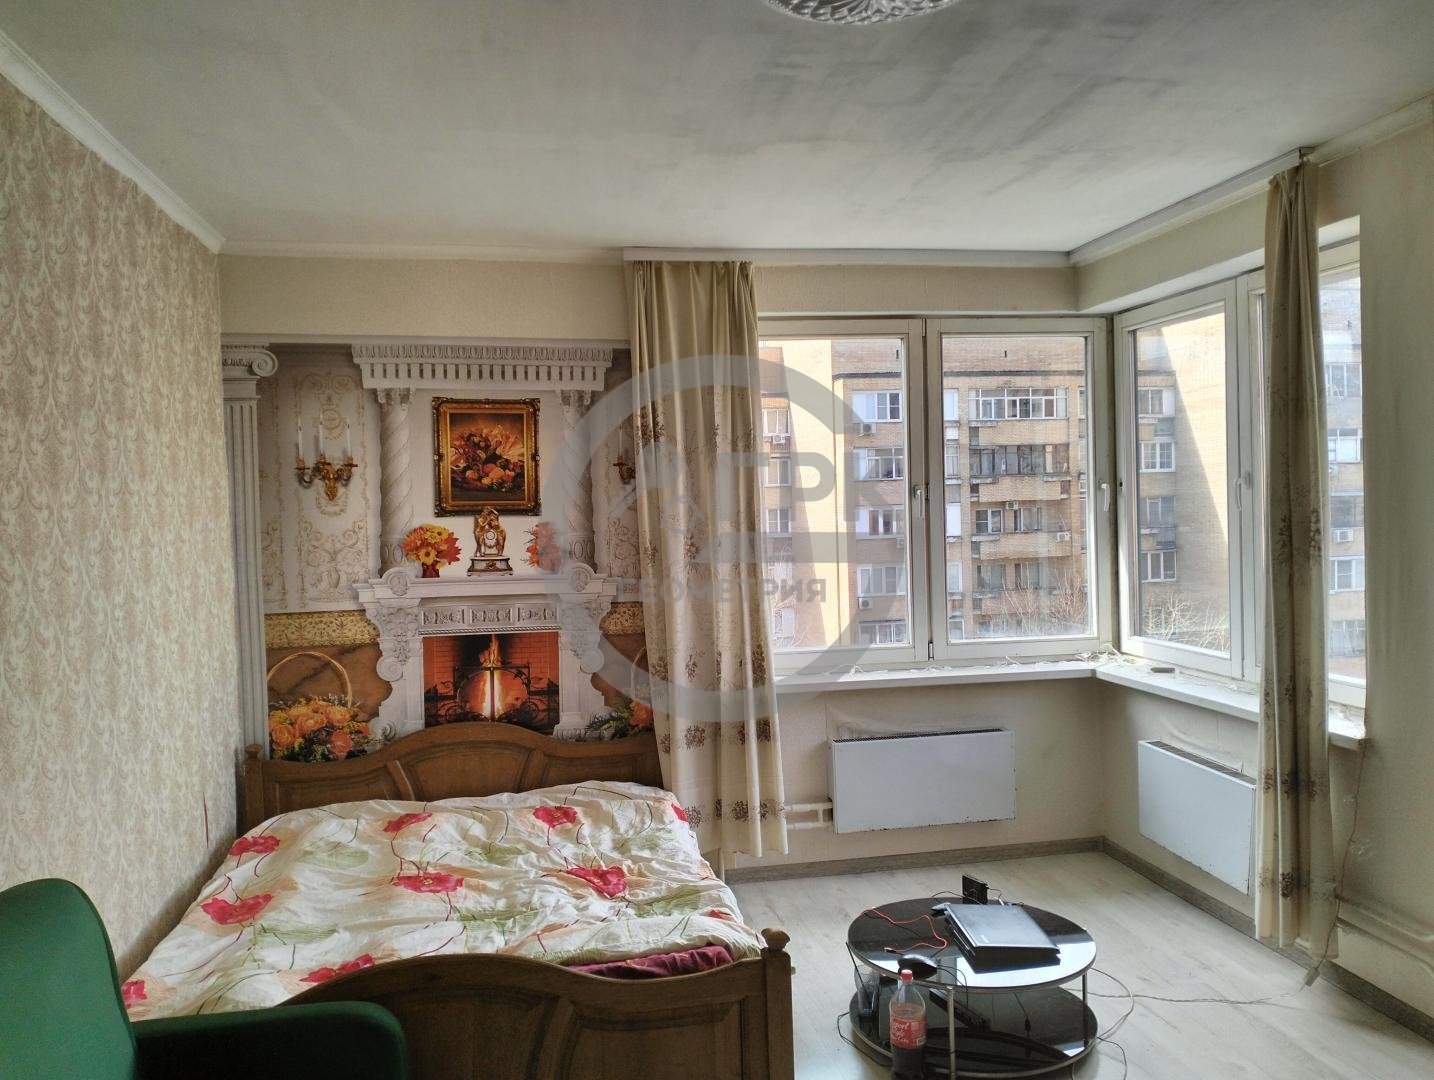 Продам квартиру в Москве по адресу улица Архитектора Власова, 10, площадь 723 квм Недвижимость Москва (Россия) Продается 3-комнатная квартира 72,3 кв